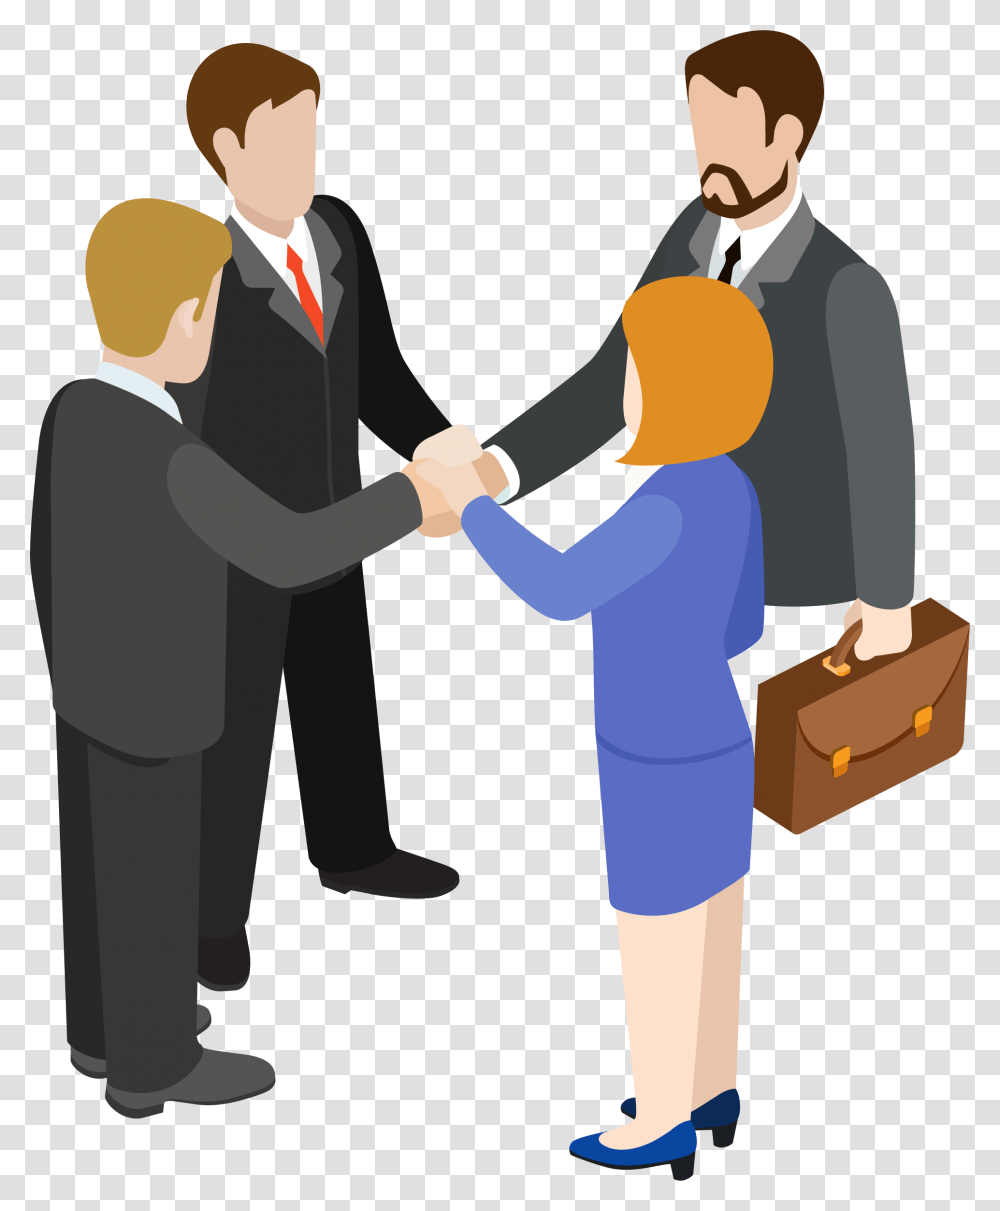 Handshake Clipart Circle Construccion De Empresa, Person, Human, People, Bag Transparent Png